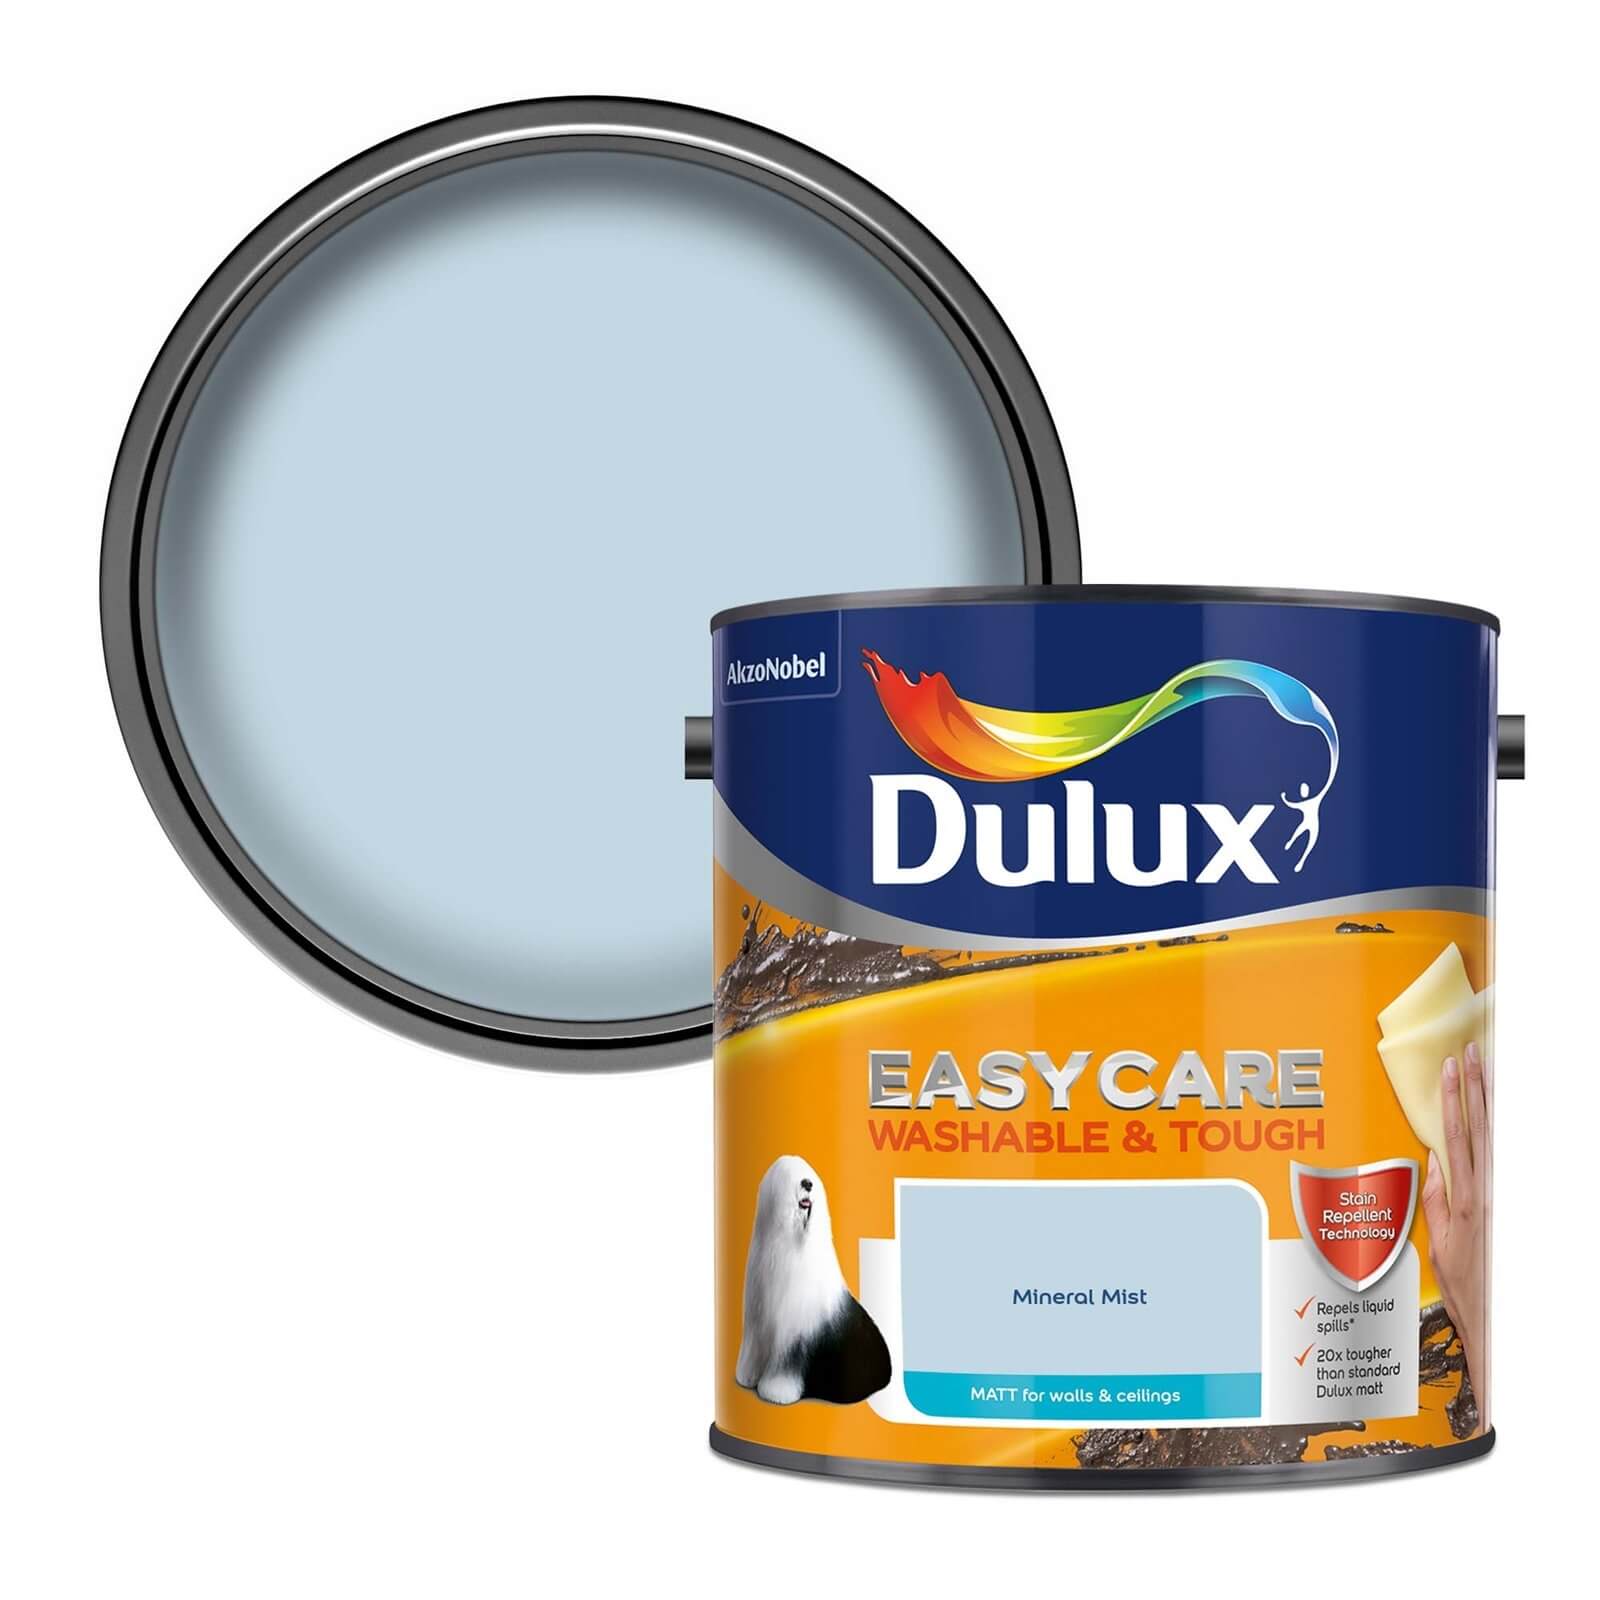 Dulux Easycare Washable & Tough Matt Paint Mineral Mist - 2.5L